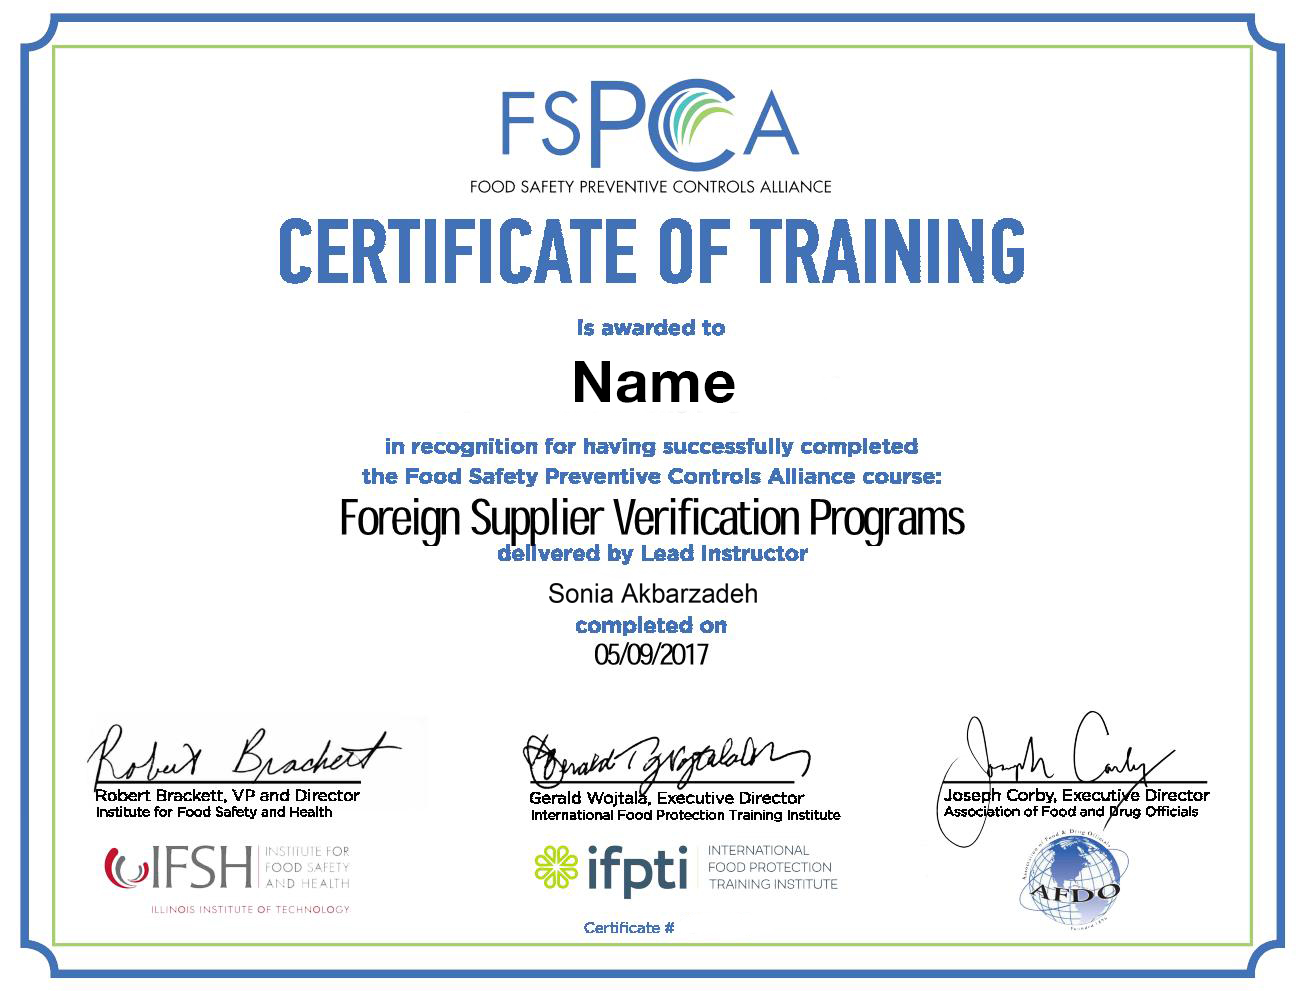 FSPCA FSVP Certificate